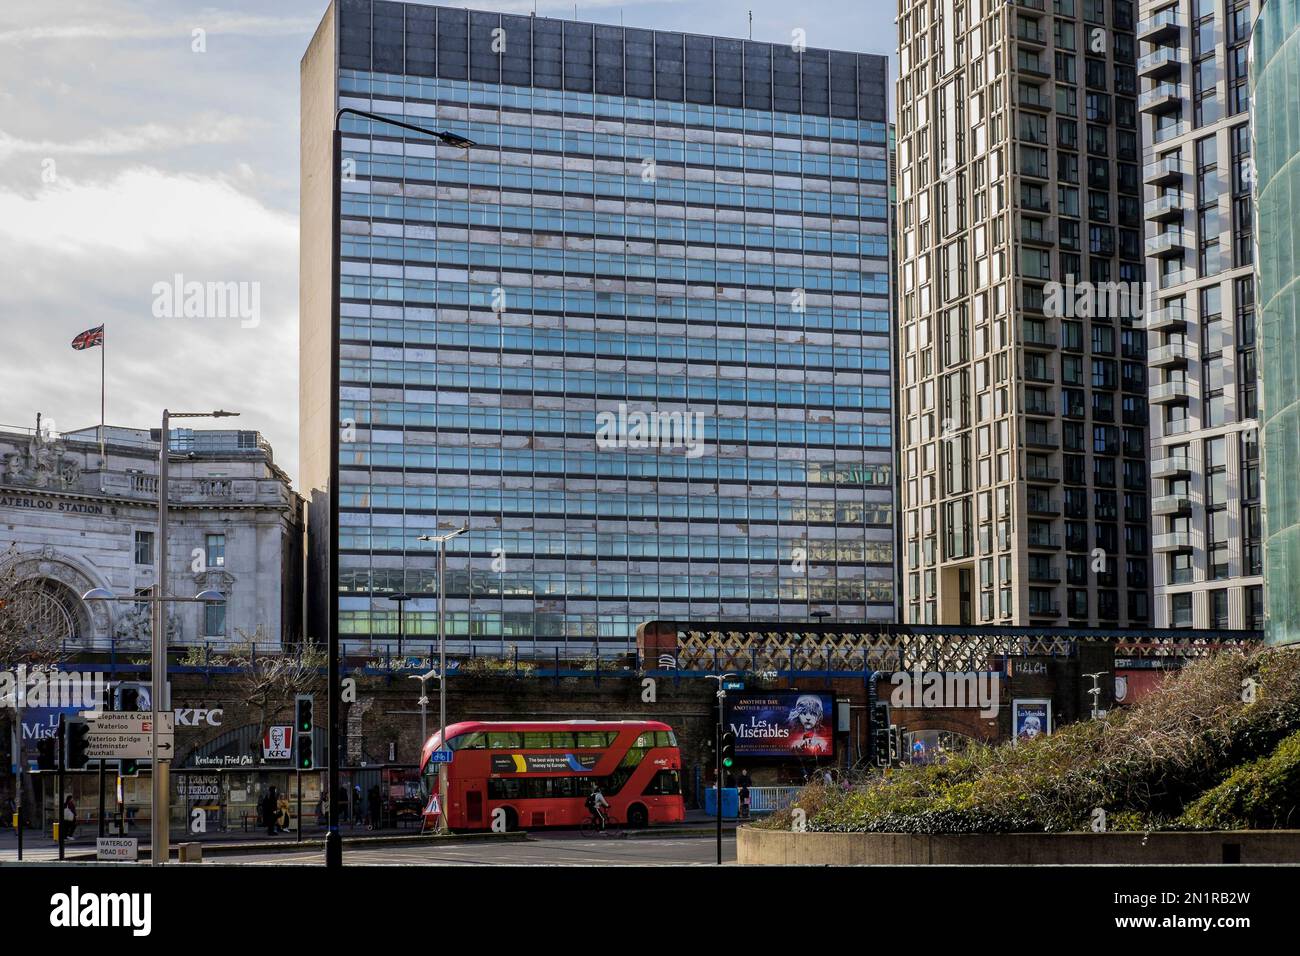 La tour immeuble un immeuble de bureaux de 1960s à côté de la station Waterloo, dont la démolition et le réaménagement du site sont prévus. Londres. ROYAUME-UNI Banque D'Images